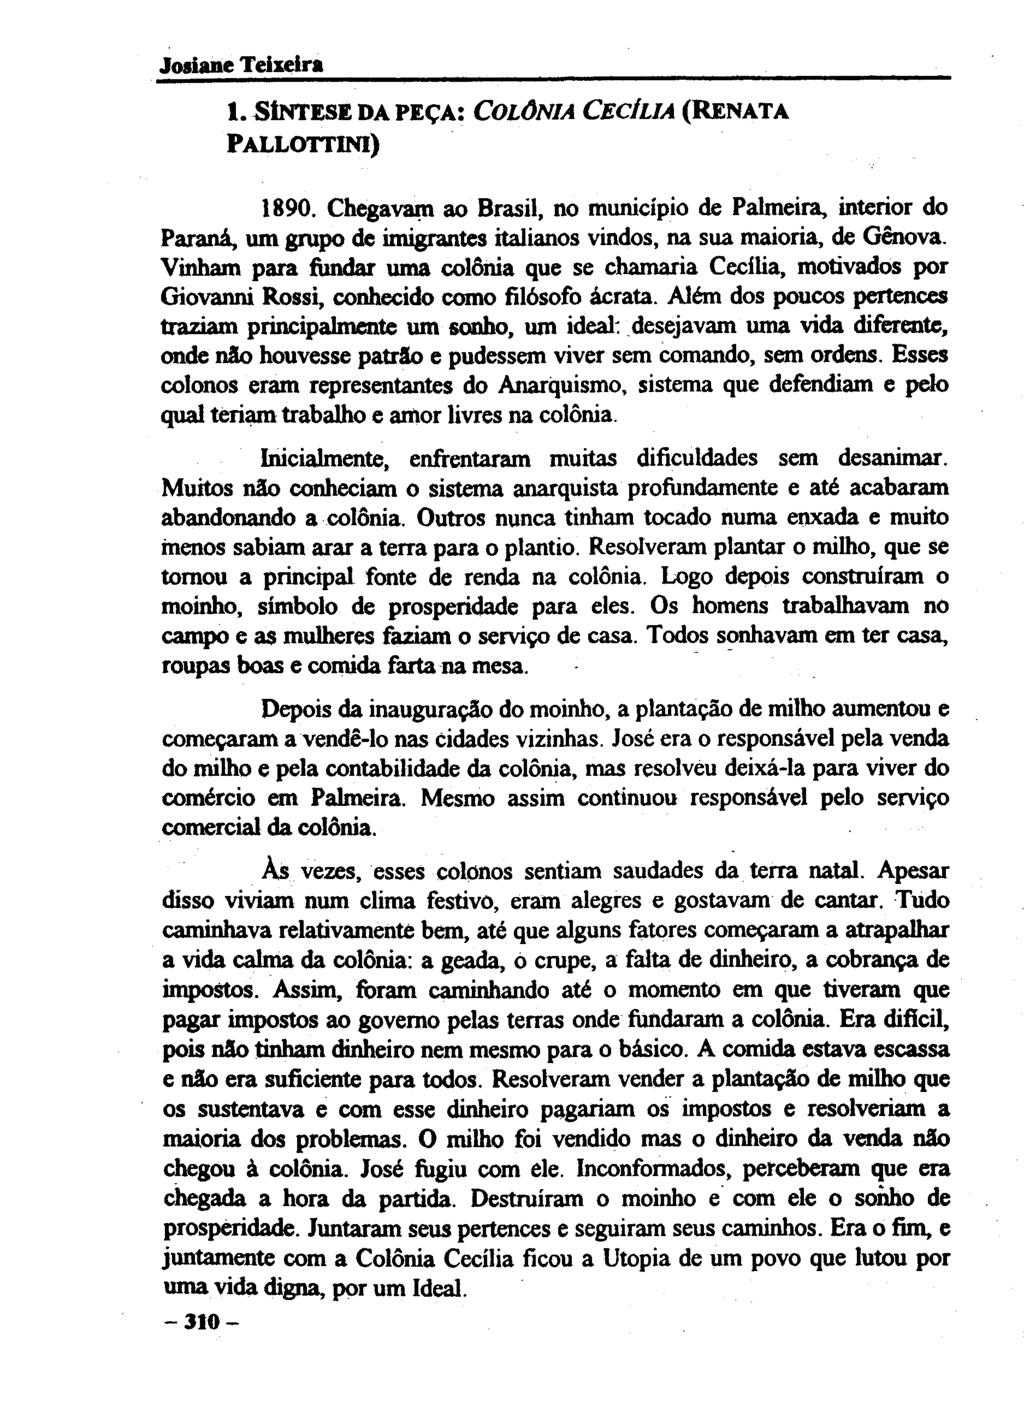 1. SÍNTESE DA PEÇA: COLÔNIA CECÍLIA (RENATA PALLOTTINI) 1890. Chegavam ao Brasil, no município de Palmeira, interior do Paraná, um grupo de imigrantes italianos vindos, na sua maioria, de Génova.